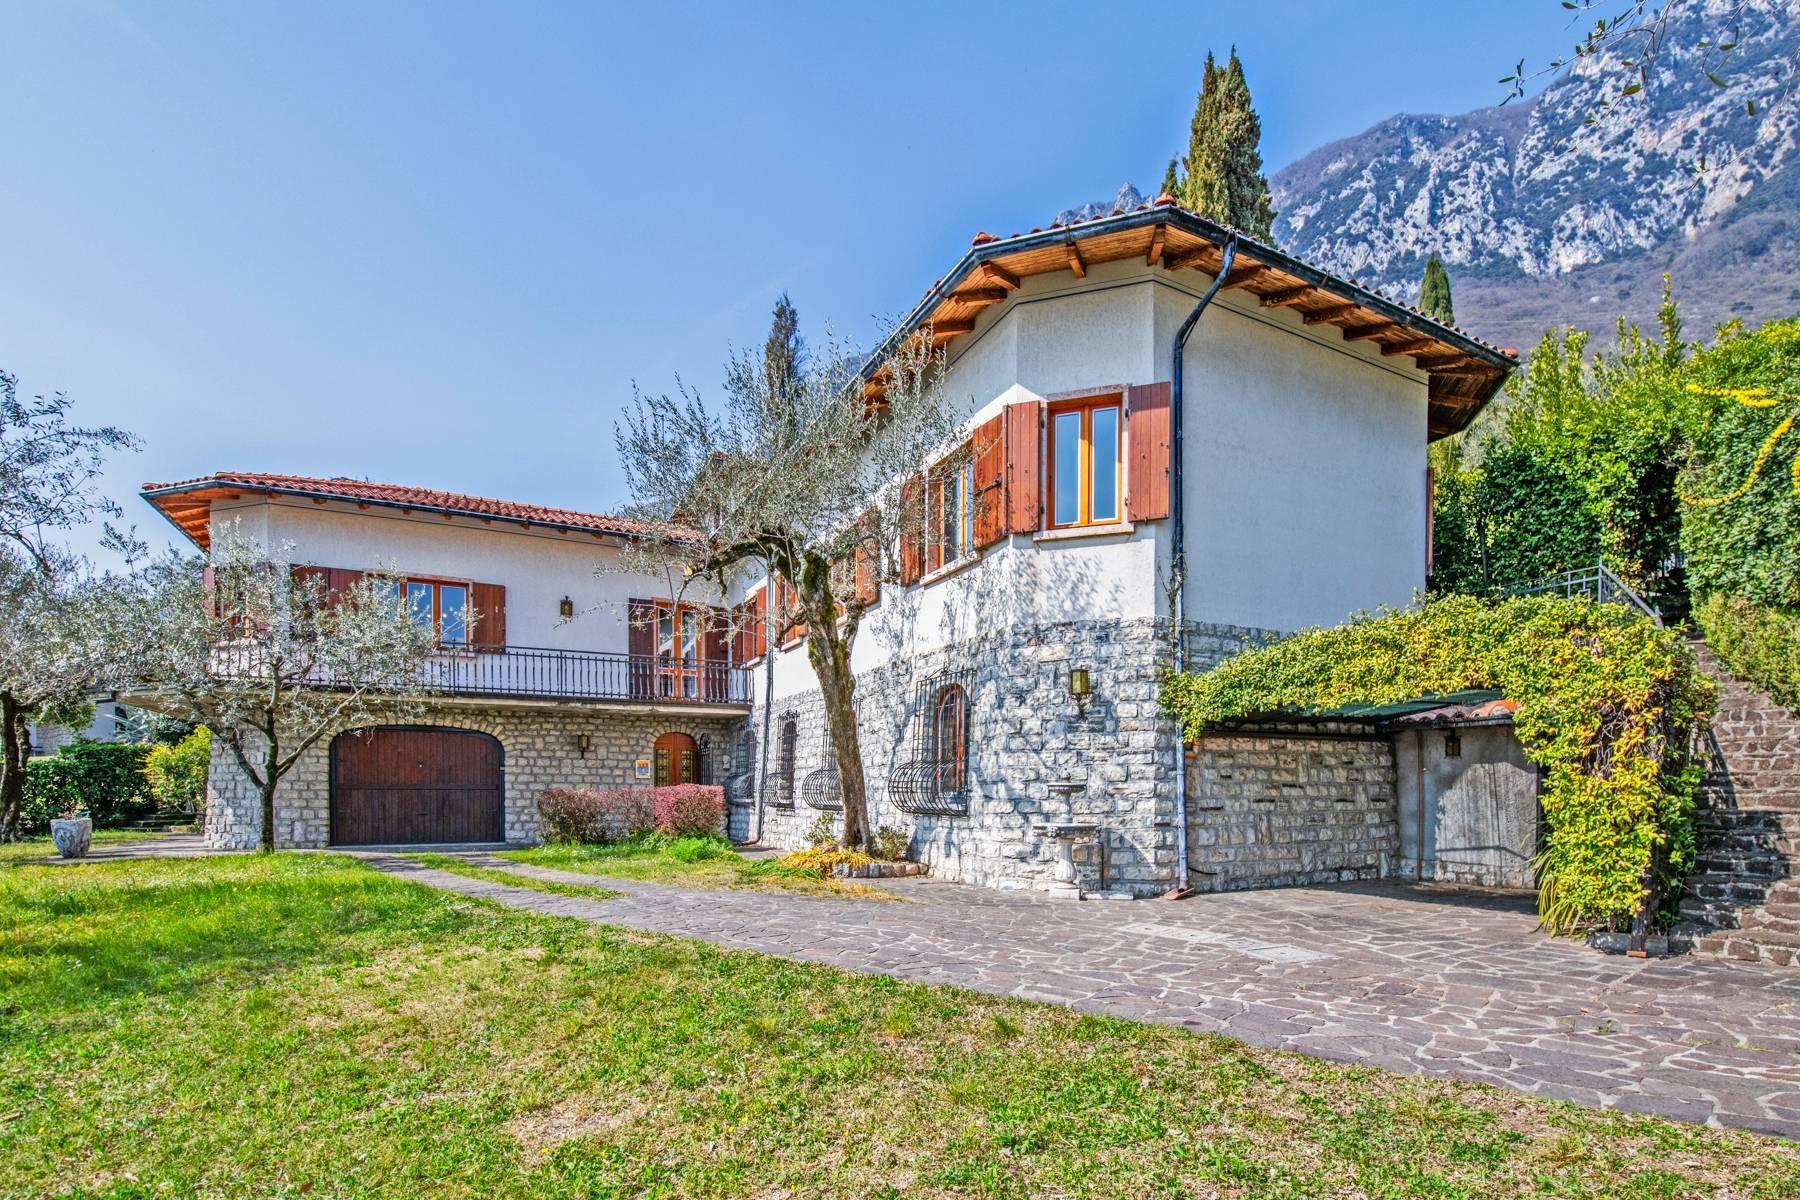 Villa in Gargnano inmitten der Olivenbäume vom Gardasee mit herrlichem Seeblick - 14